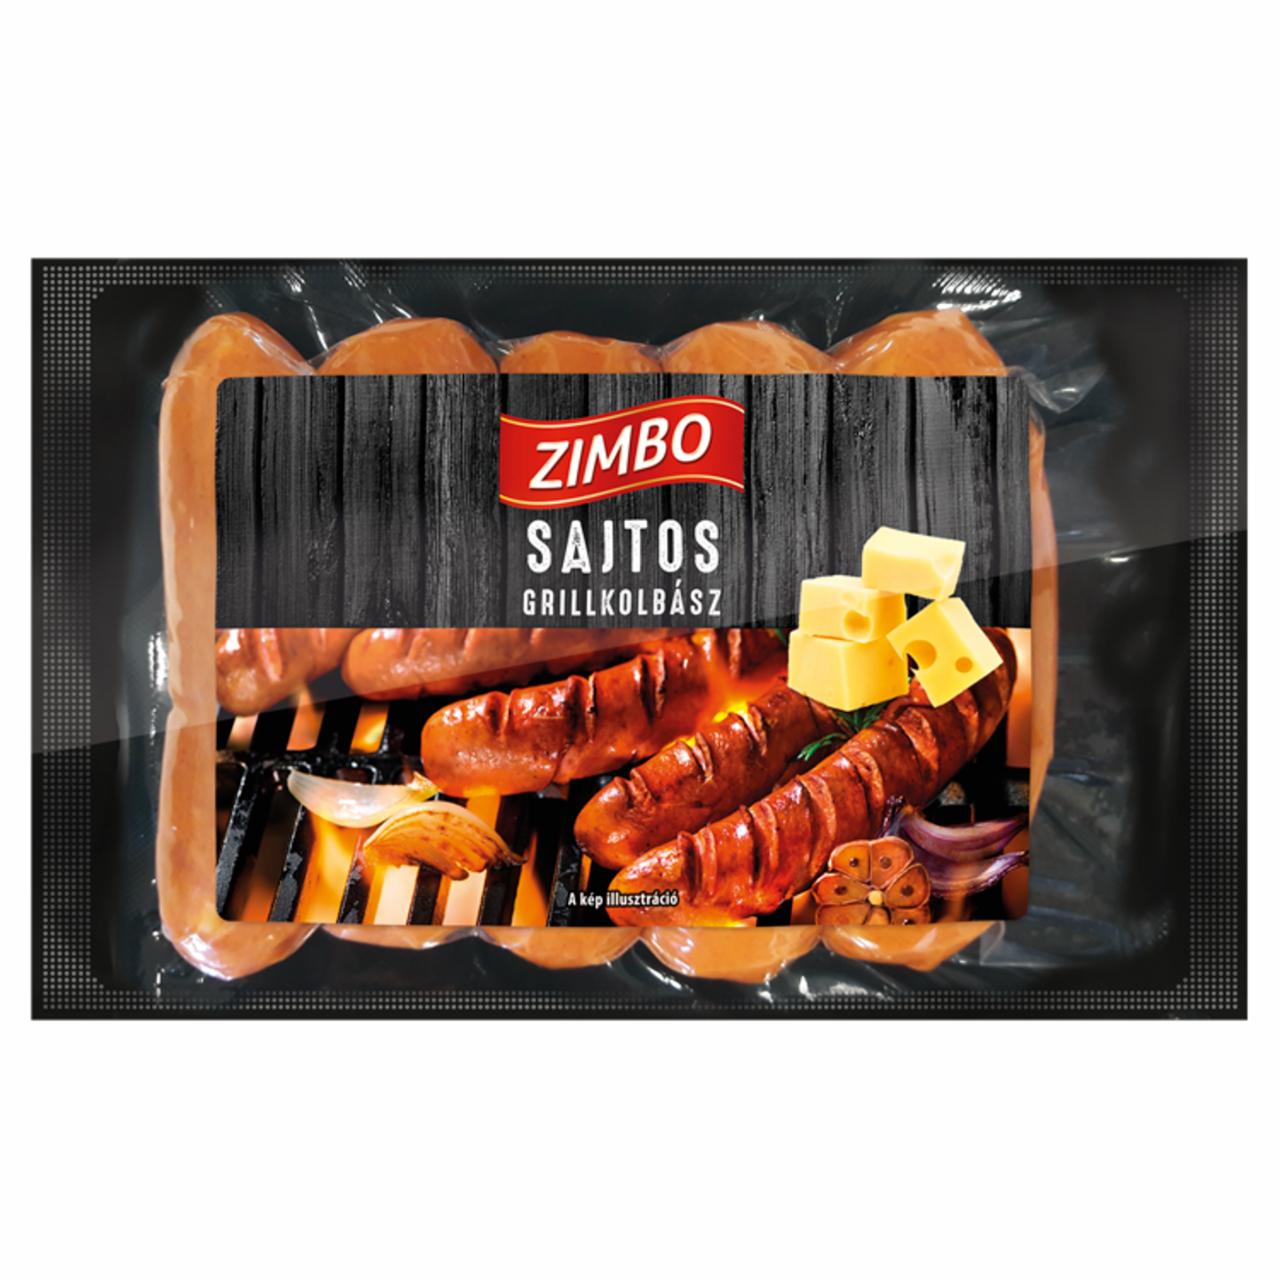 Képek - Zimbo Premium sajtos sertés grillkolbász 300 g